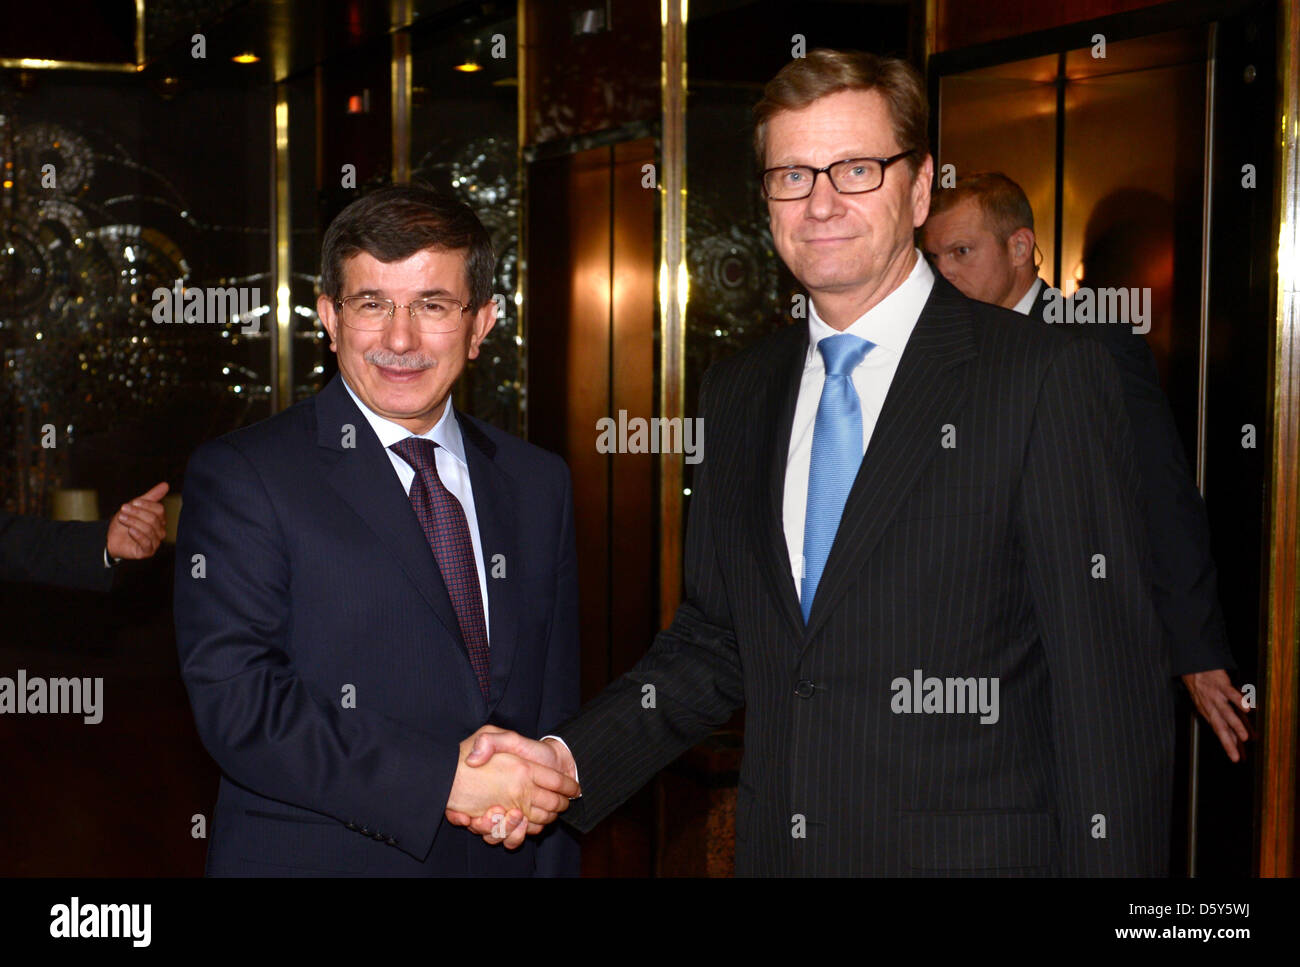 Le ministre des Affaires étrangères allemand Guido Westerwelle (R) rencontre son collègue turc Ahmet Davutoglu à Istanbul, Turquie, 13 octobre 2012. Photo : RAINER JENSEN Banque D'Images